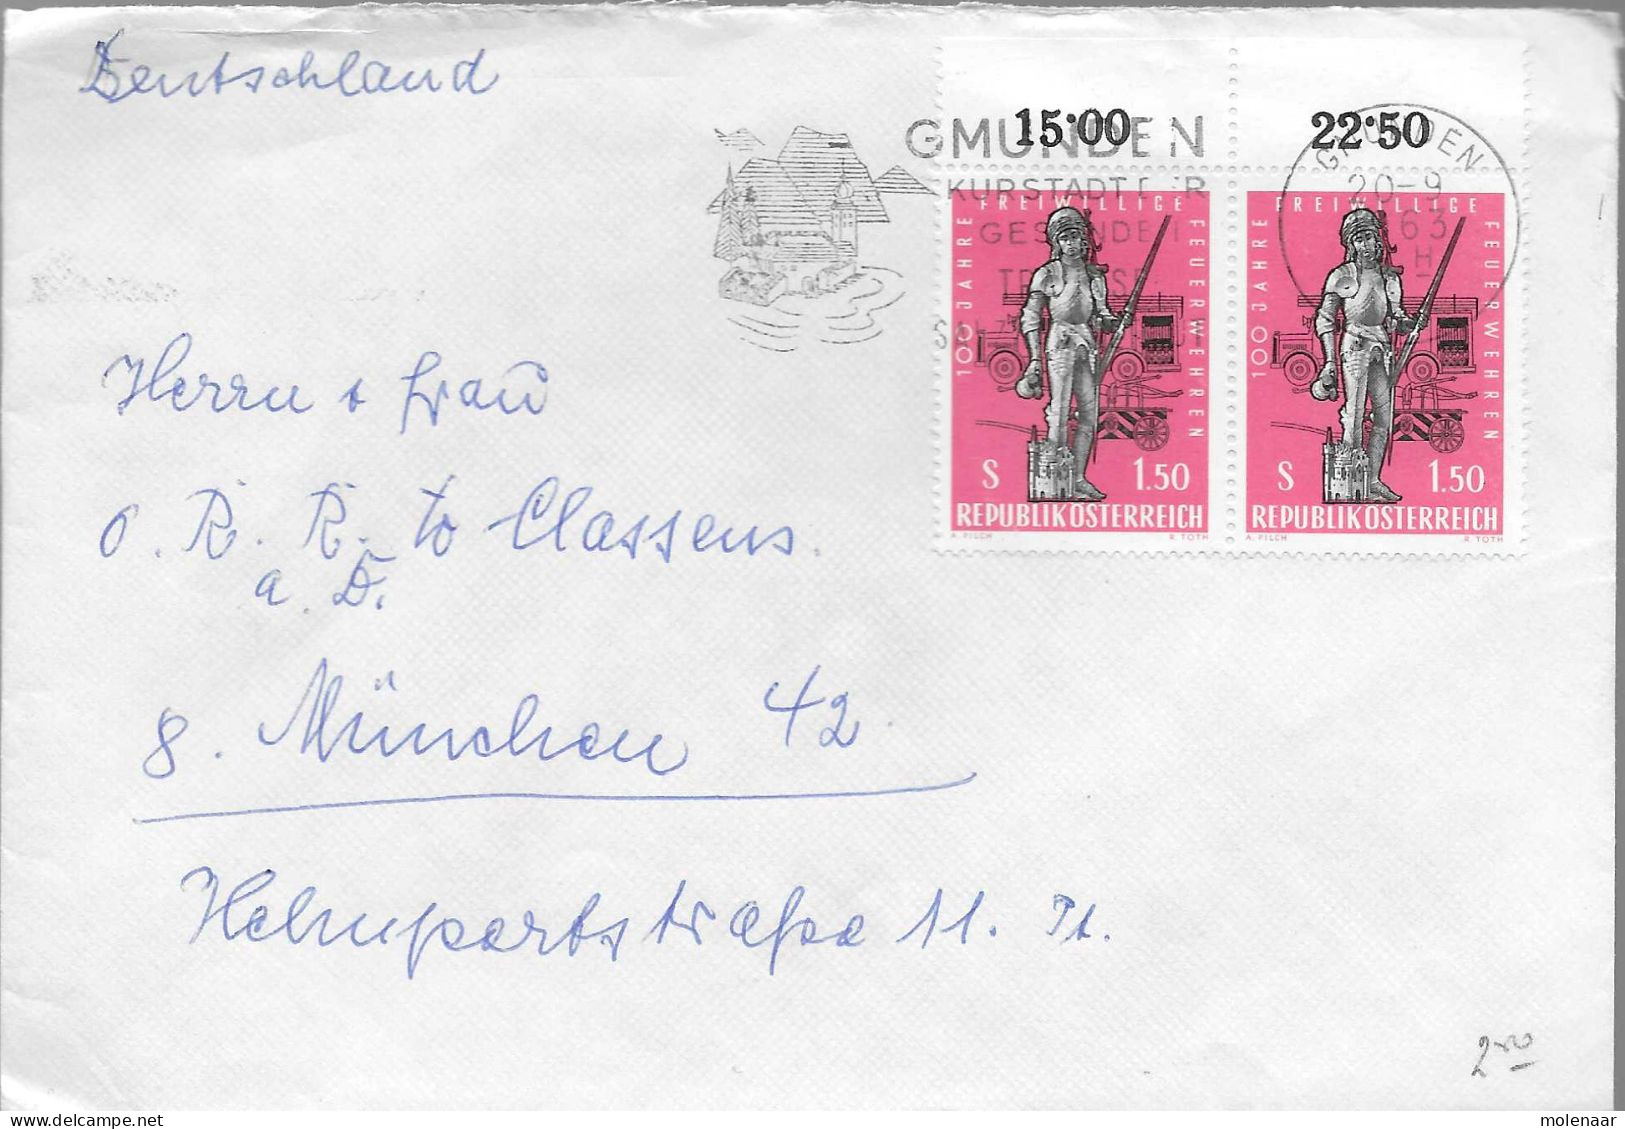 Postzegels > Europa > Oostenrijk > 1945-.... 2de Republiek > 1961-1970 >brief 2x No. 1176 (17742) - Covers & Documents